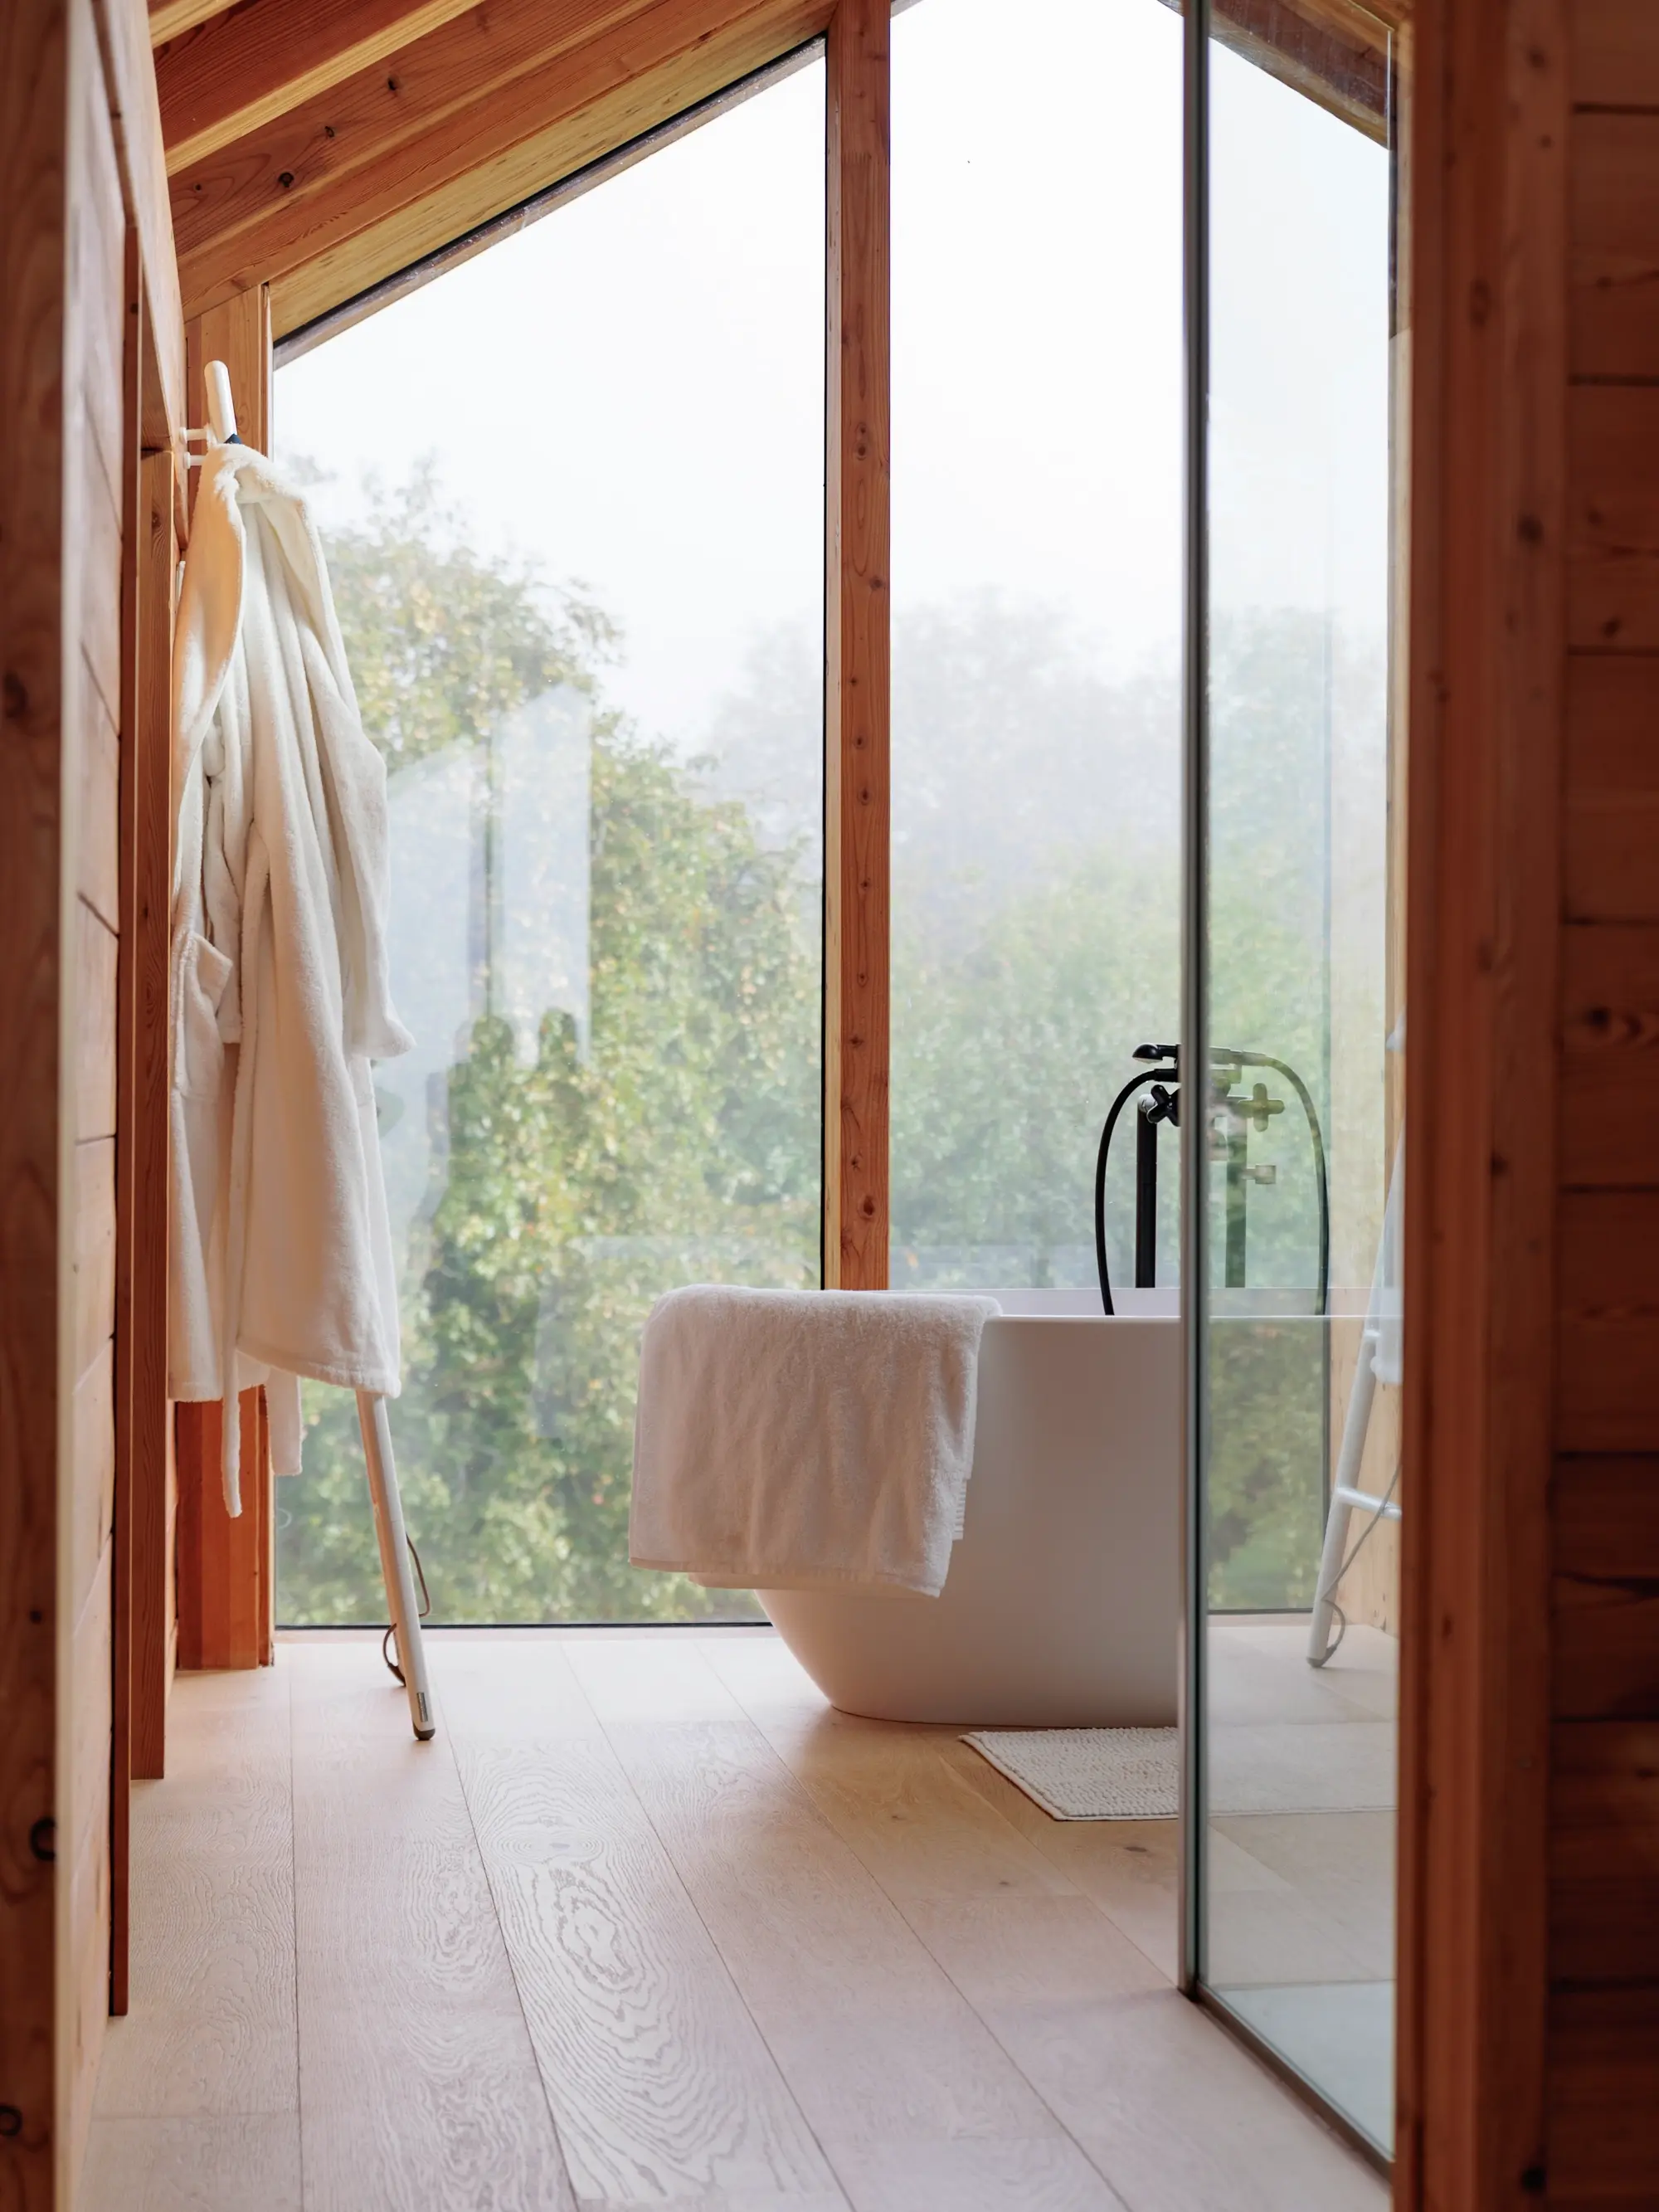 Une salle de bain naturellement éclairée avec des murs en bois, un sol clair, une grande baignoire indépendante, et une porte vitrée donnant sur un environnement verdoyant.